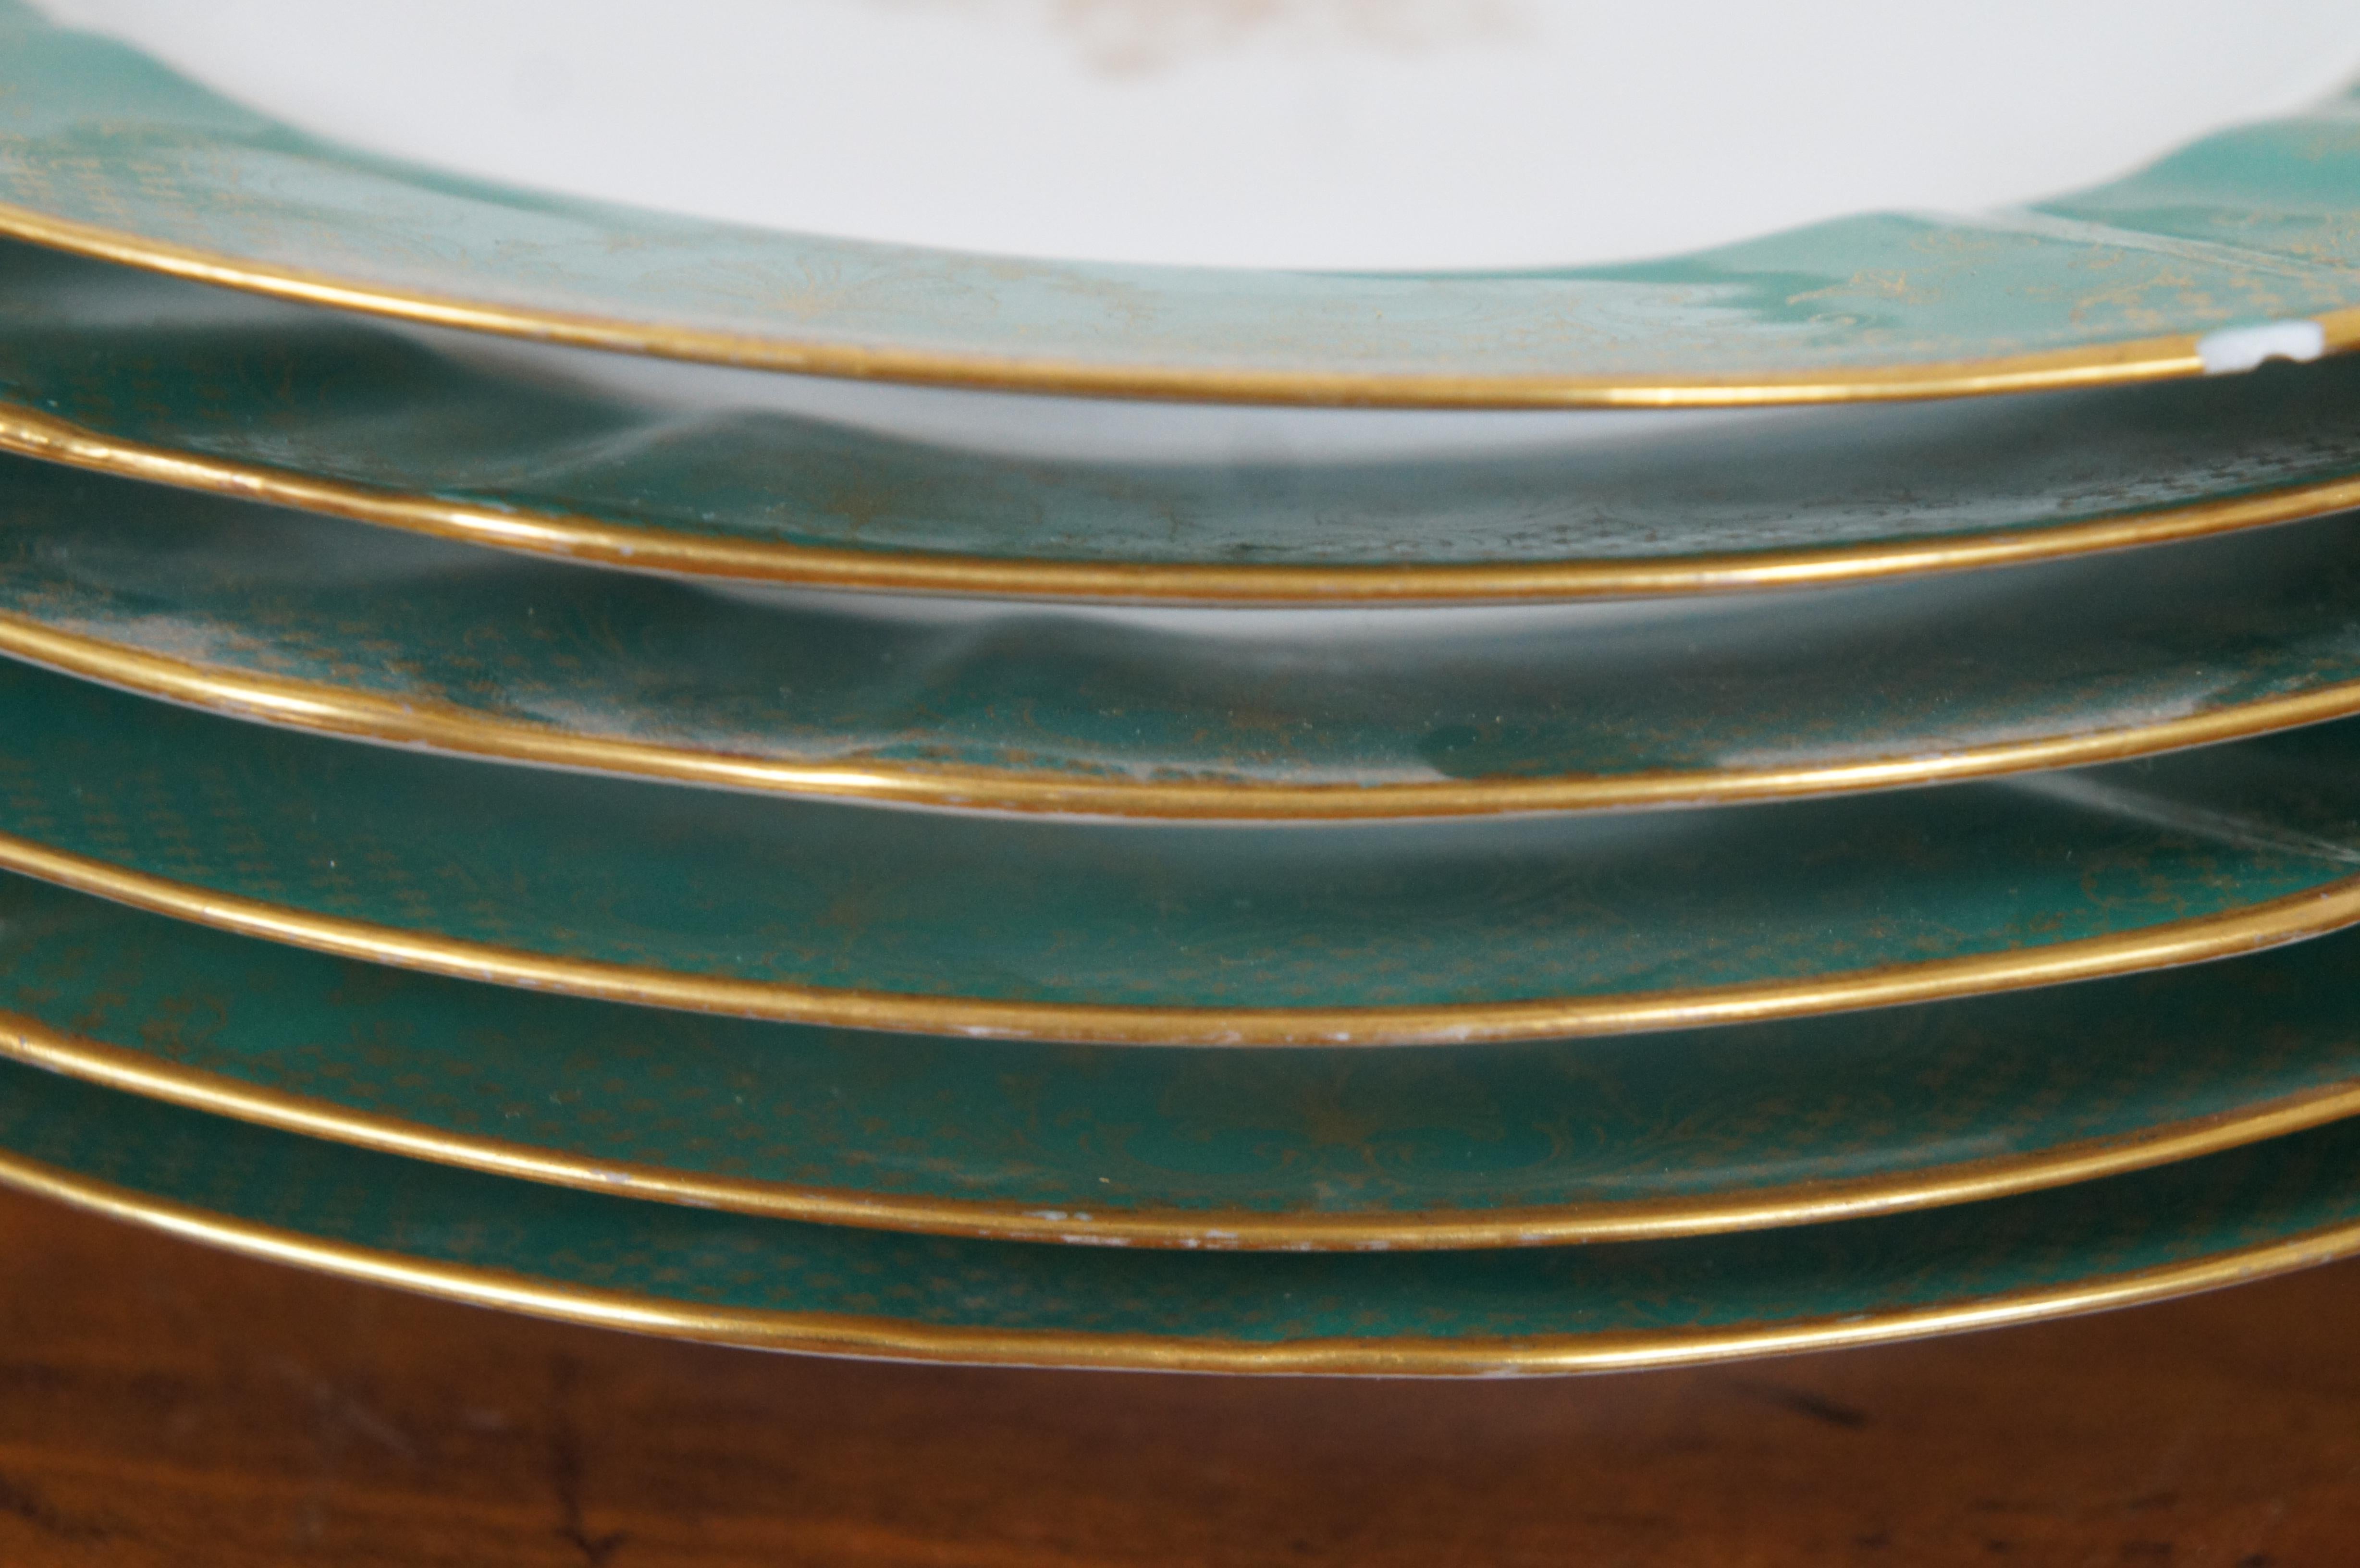 6 M Redon Limoges La Porcelain Limousine Green Gold Salad Lunch Plates 5